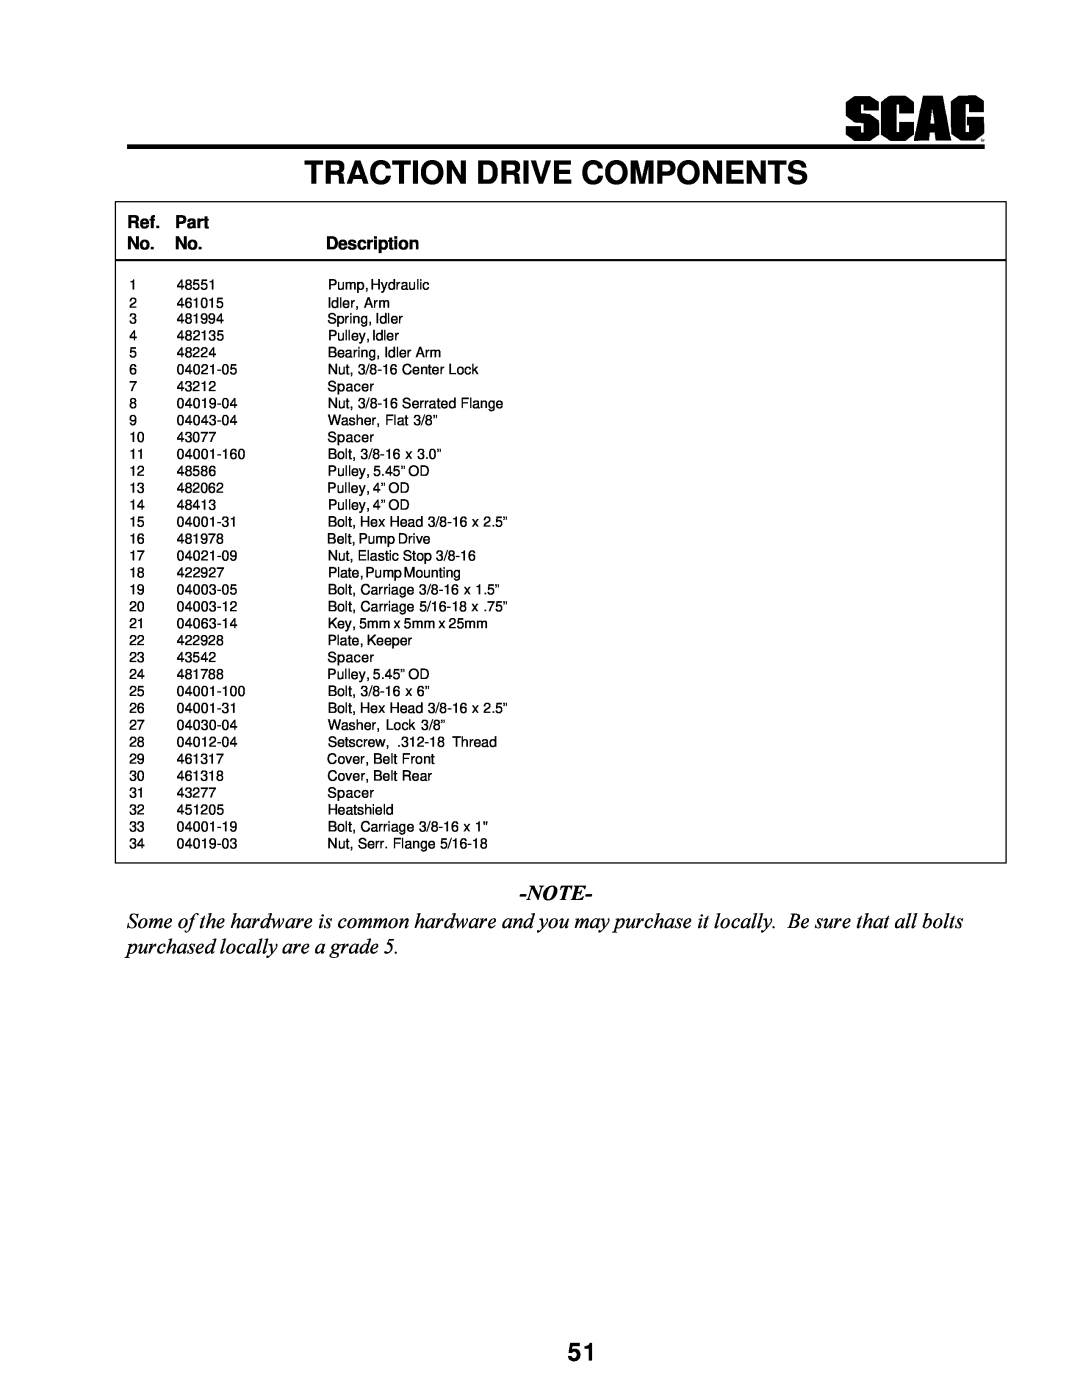 MB QUART SCR manual Traction Drive Components, Part, Description 